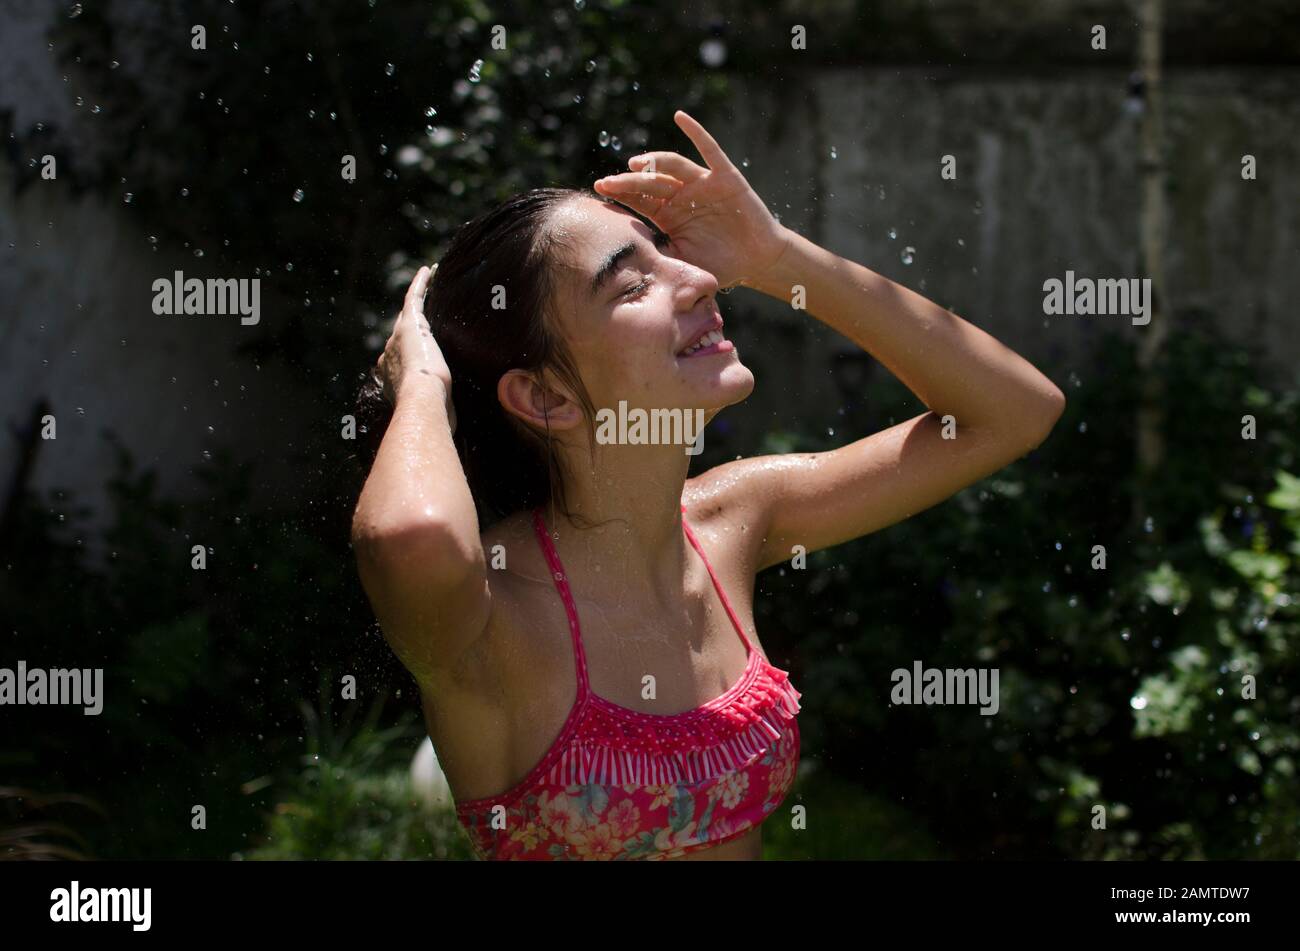 Teenager-Mädchen, das in einem Garten steht, der sich unter einem Wassersprinkler abkühlt, Argentinien Stockfoto